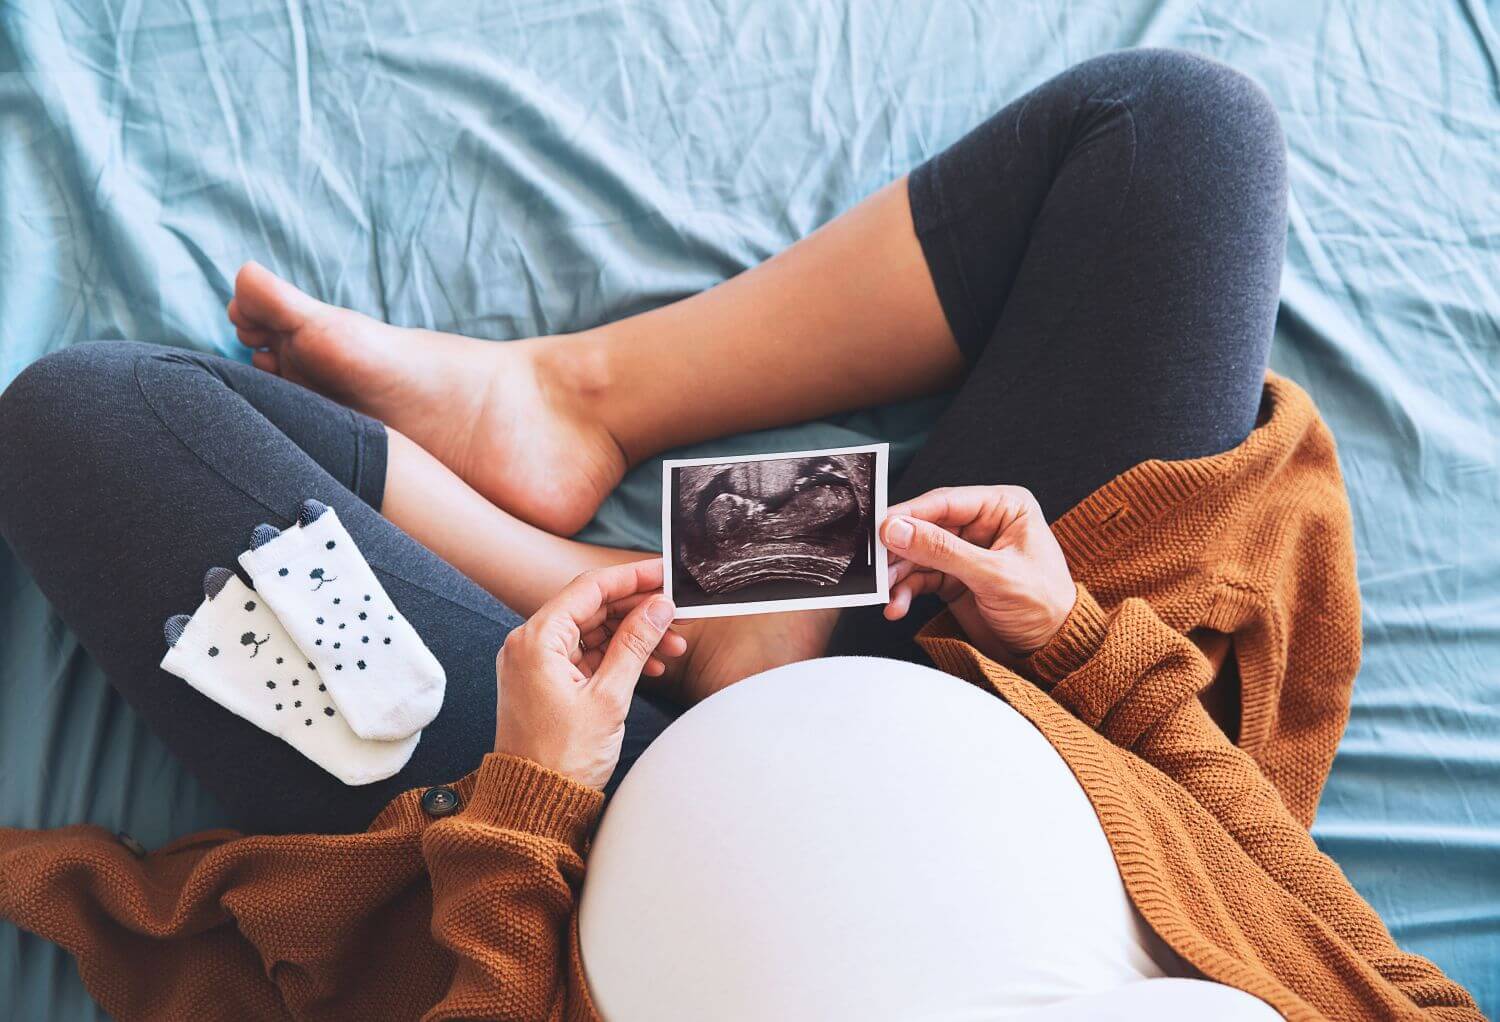 Pierwsza pomoc kobiecie w ciąży. Na czym polega? – Projekt AED